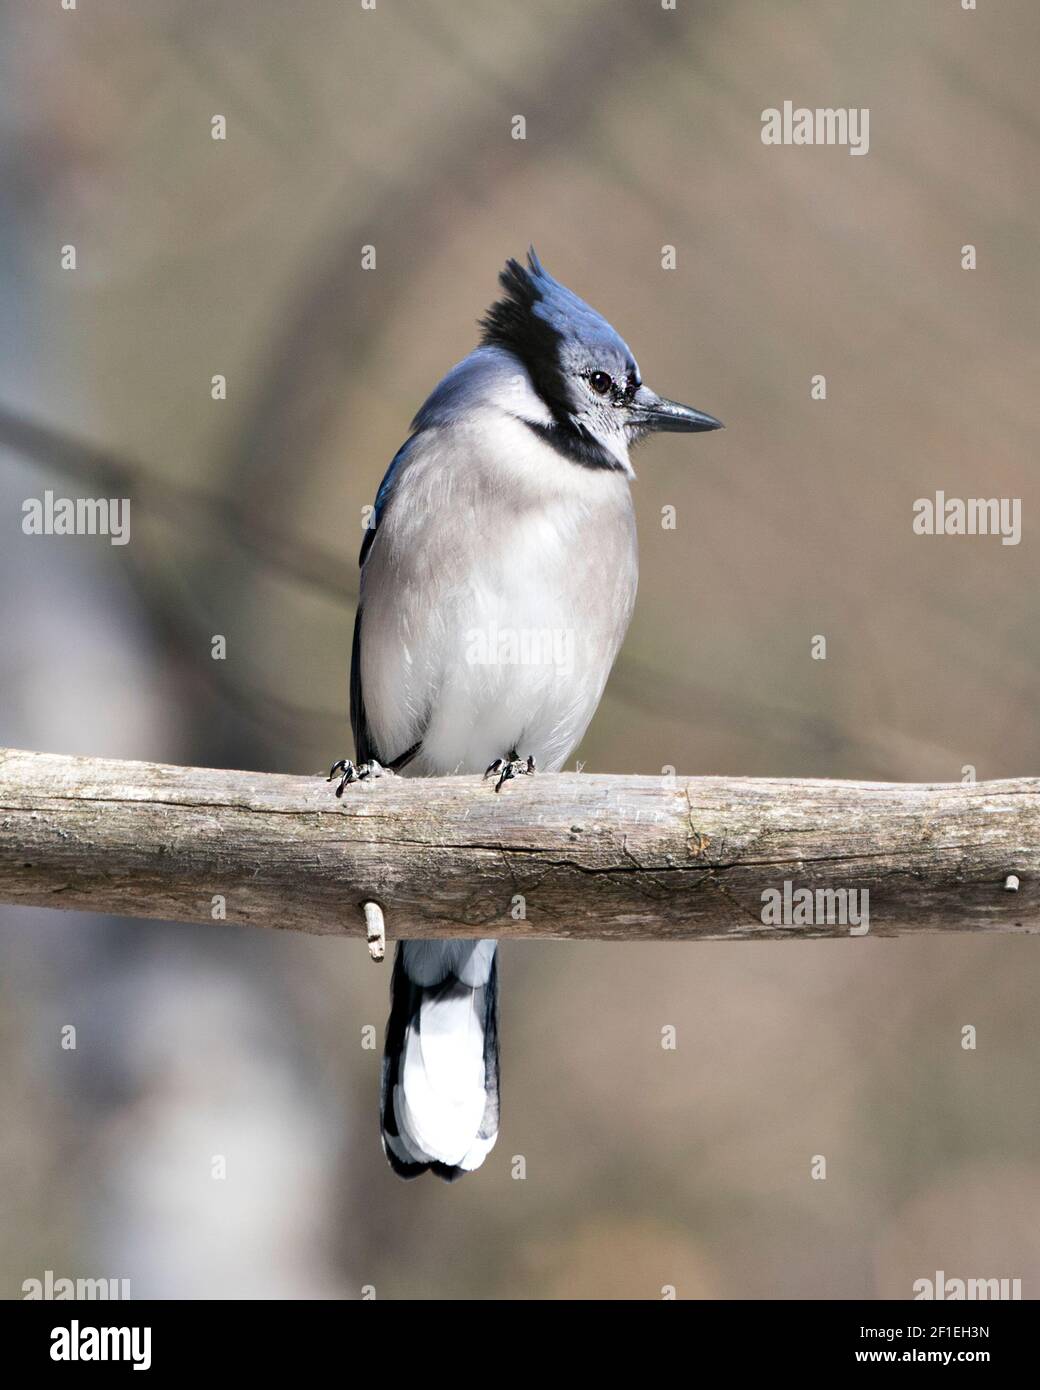 Blue Jay primer plano vista de perfil encaramado en una rama con un fondo borroso en el entorno forestal y el hábitat mirando al lado derecho. Imagen. Foto de stock